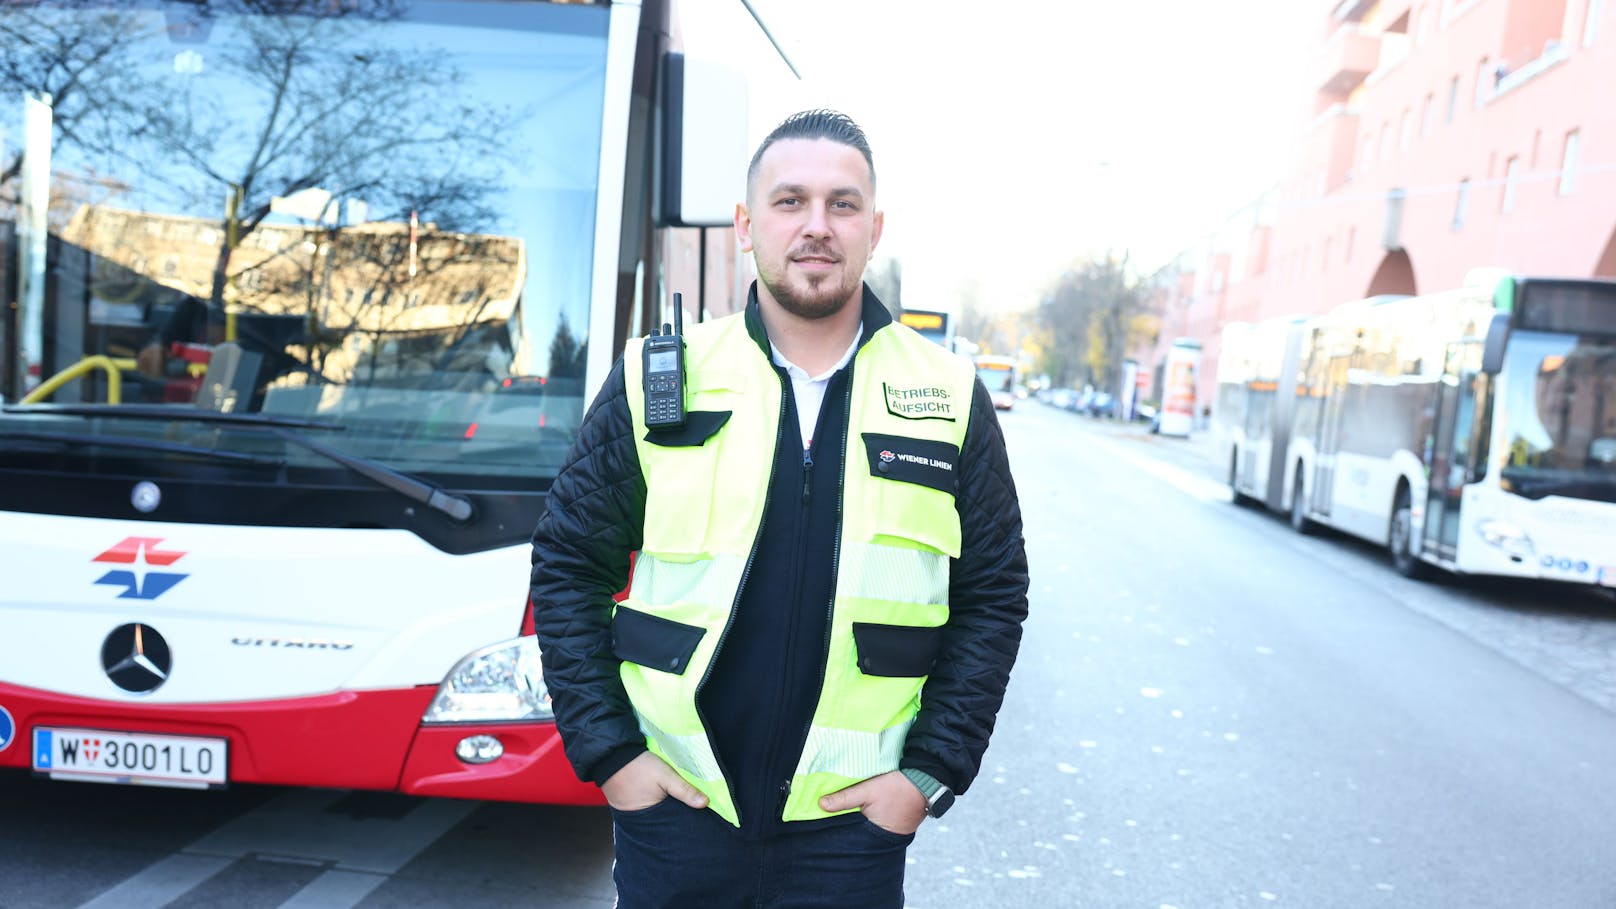 Der Vorfall ereignete sich in Heiligenstadt. Robert K. appelliert an Fahrer und Fahrgäste: "Schaut nicht weg!"